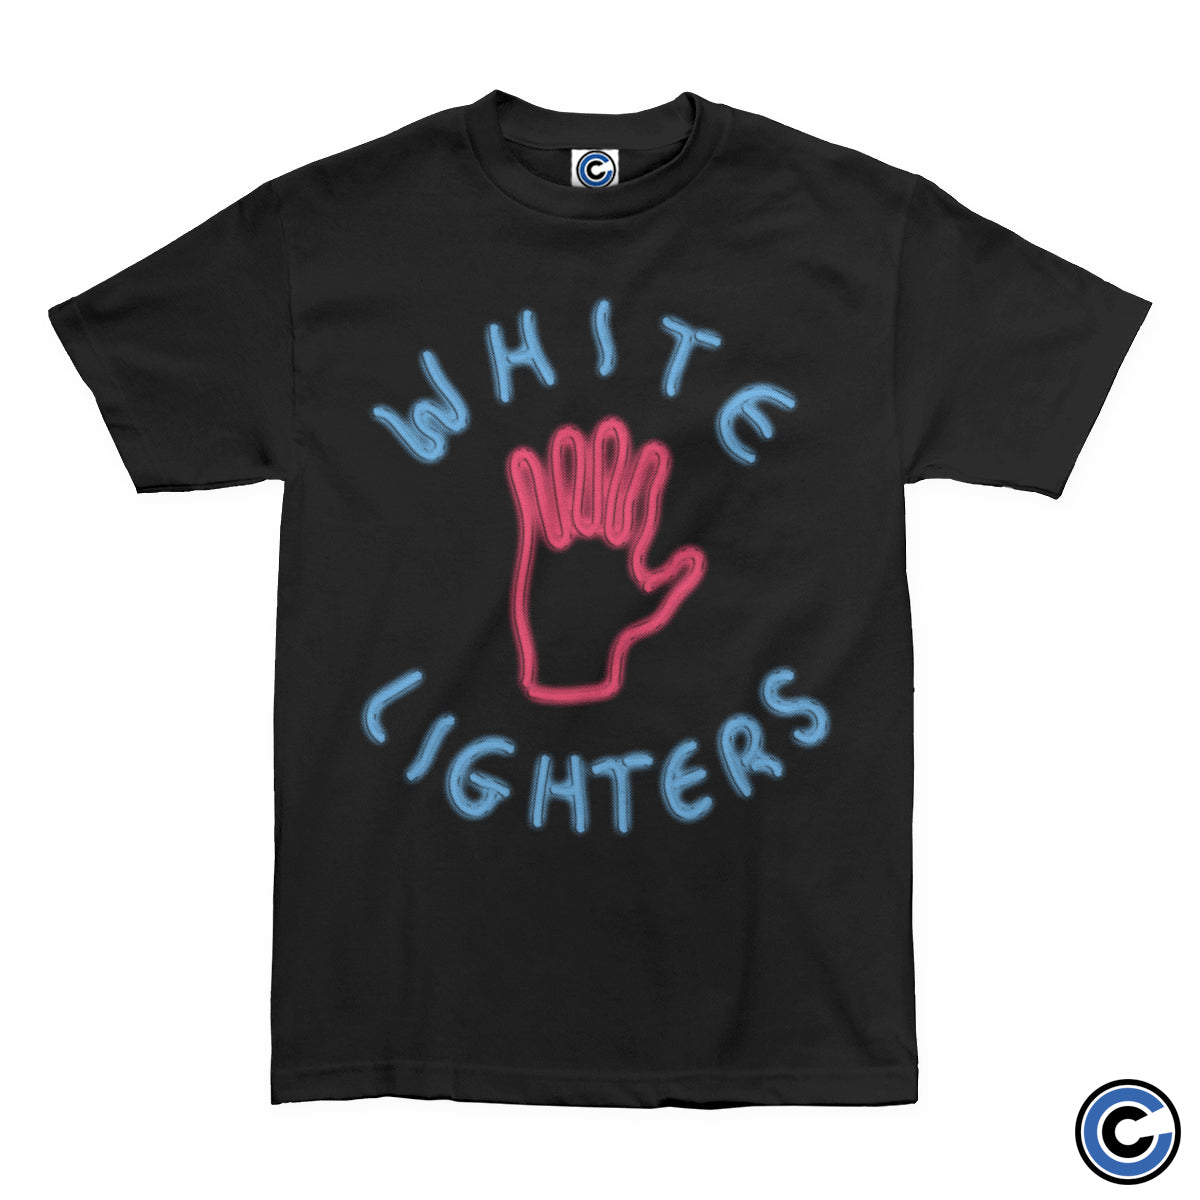 White Lighters "Neon" Shirt